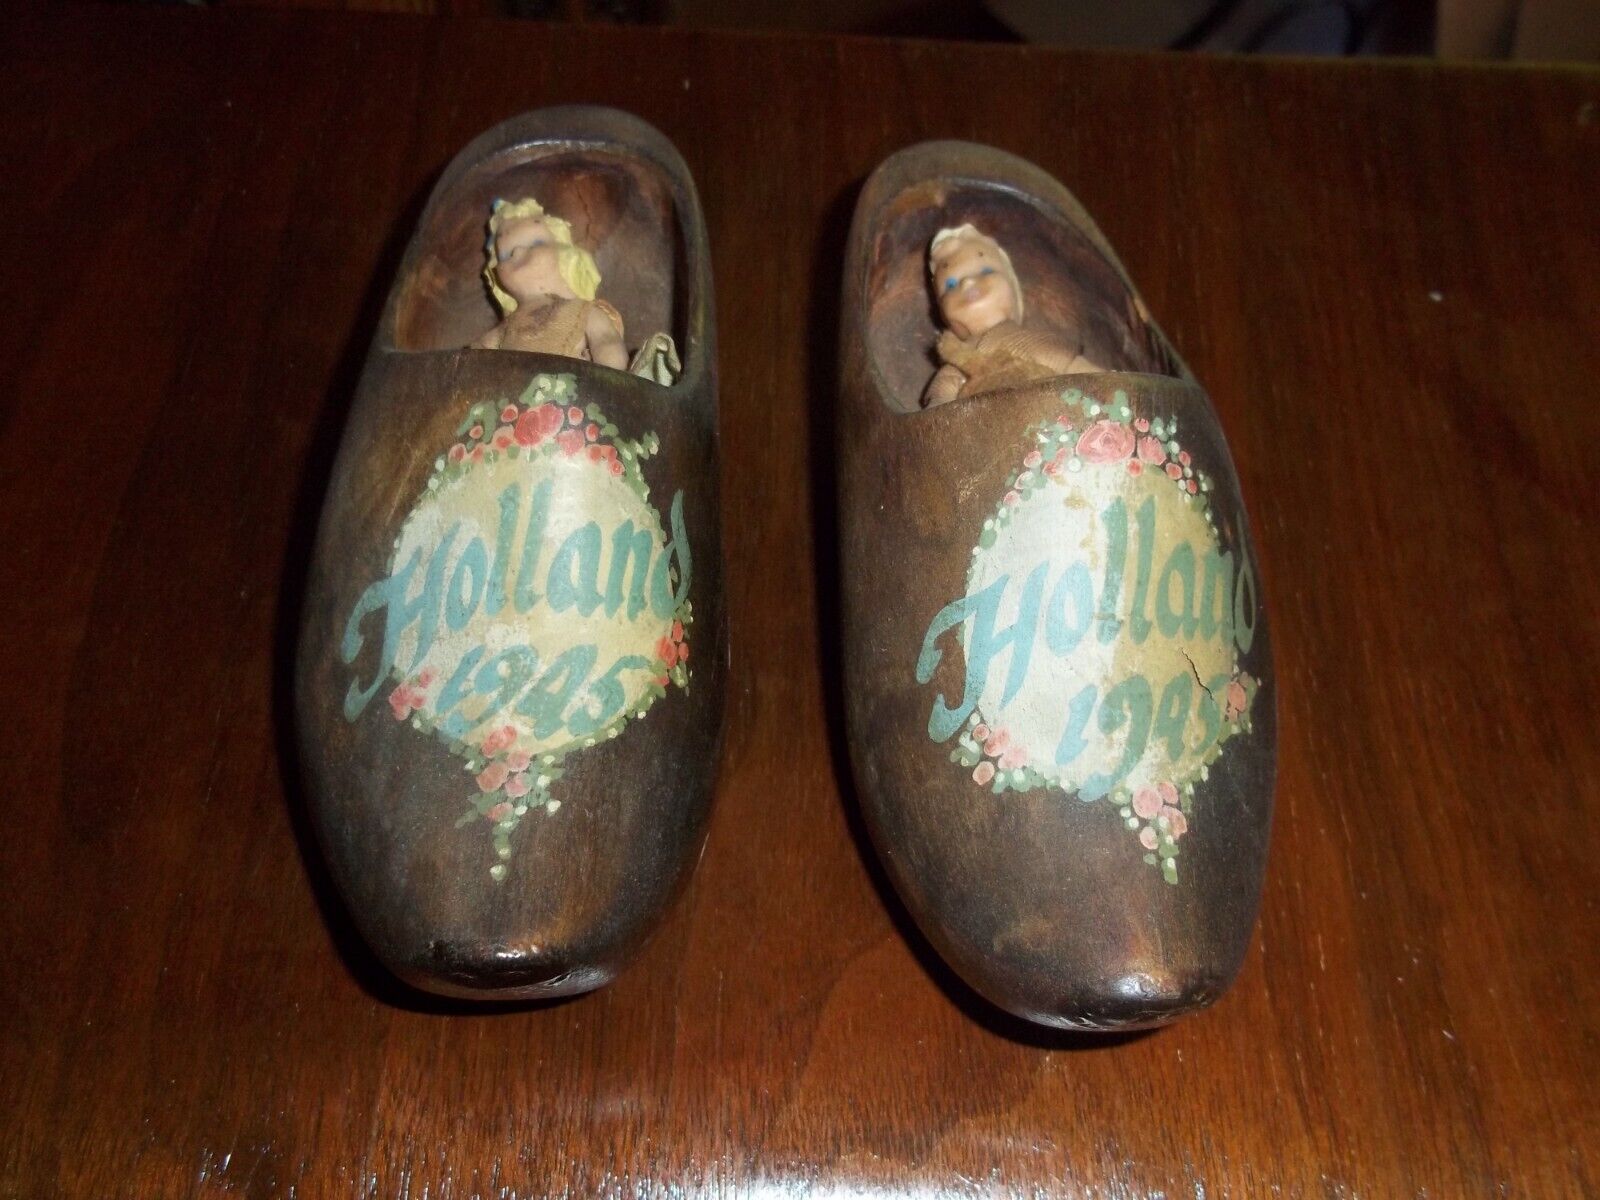 Souvenir Wood Dutch Shoes w/Babies - 1945